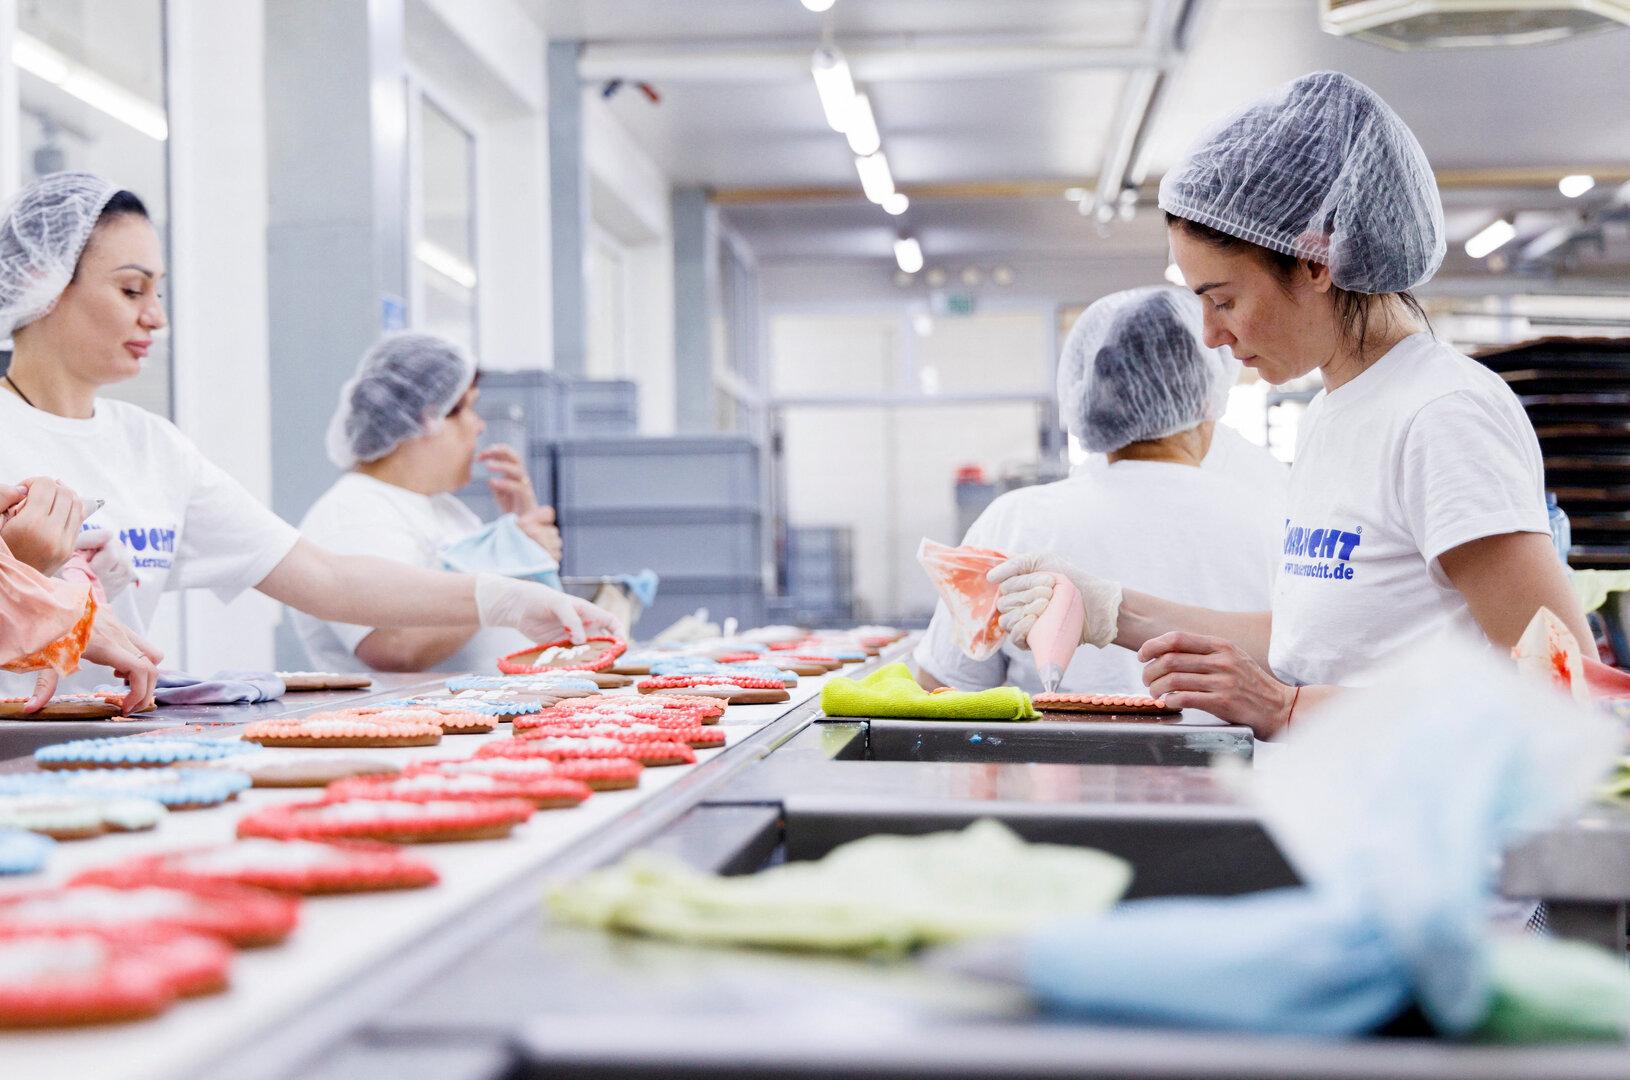 Ukrainische Flüchtlinge arbeiten in der Bäckerei "Zuckersucht" in Aschheim bei München.   